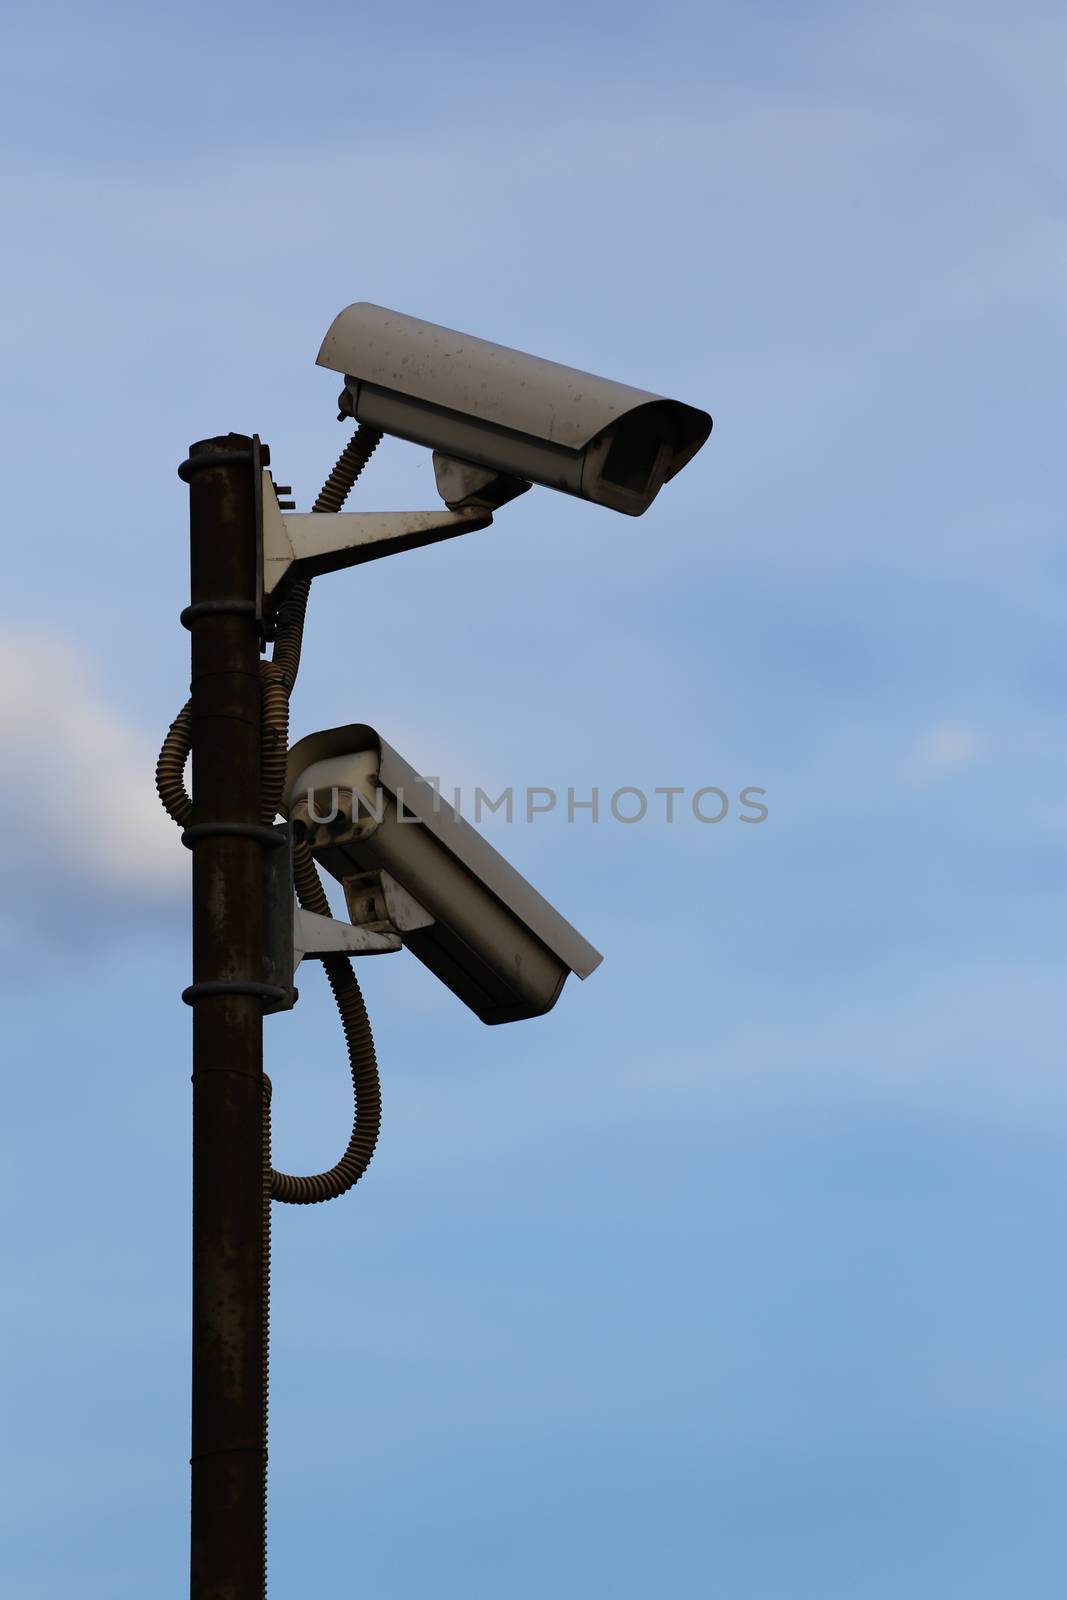 surveillance cameras by alexkosev